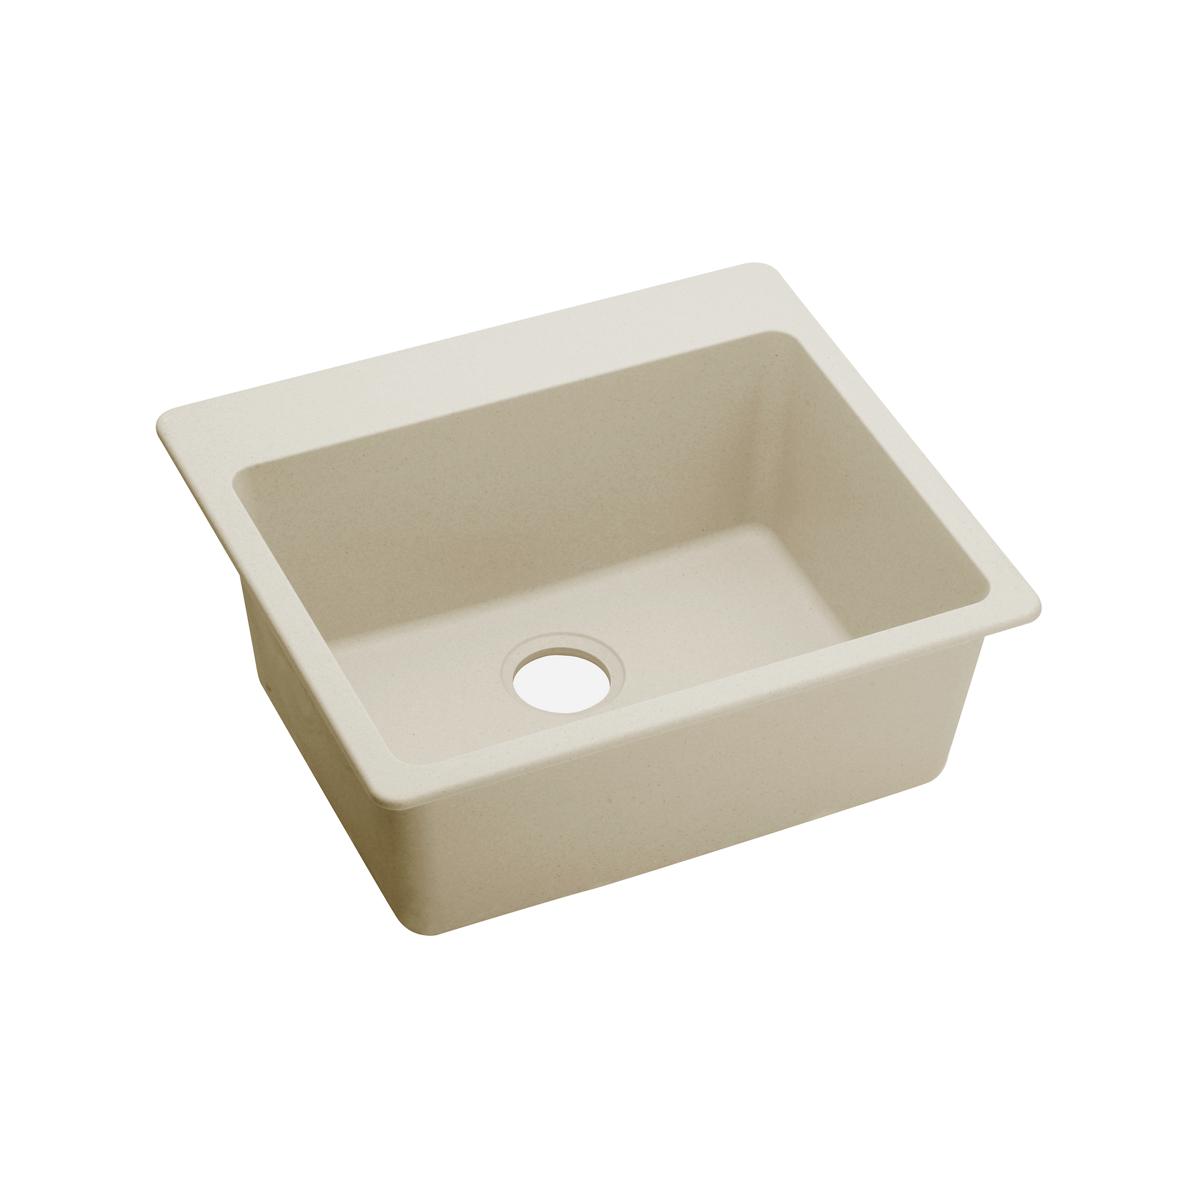 Elkay Quartz Luxe 25" x 22" x 9-1/2", Single Bowl Drop-in Sink, Parchment